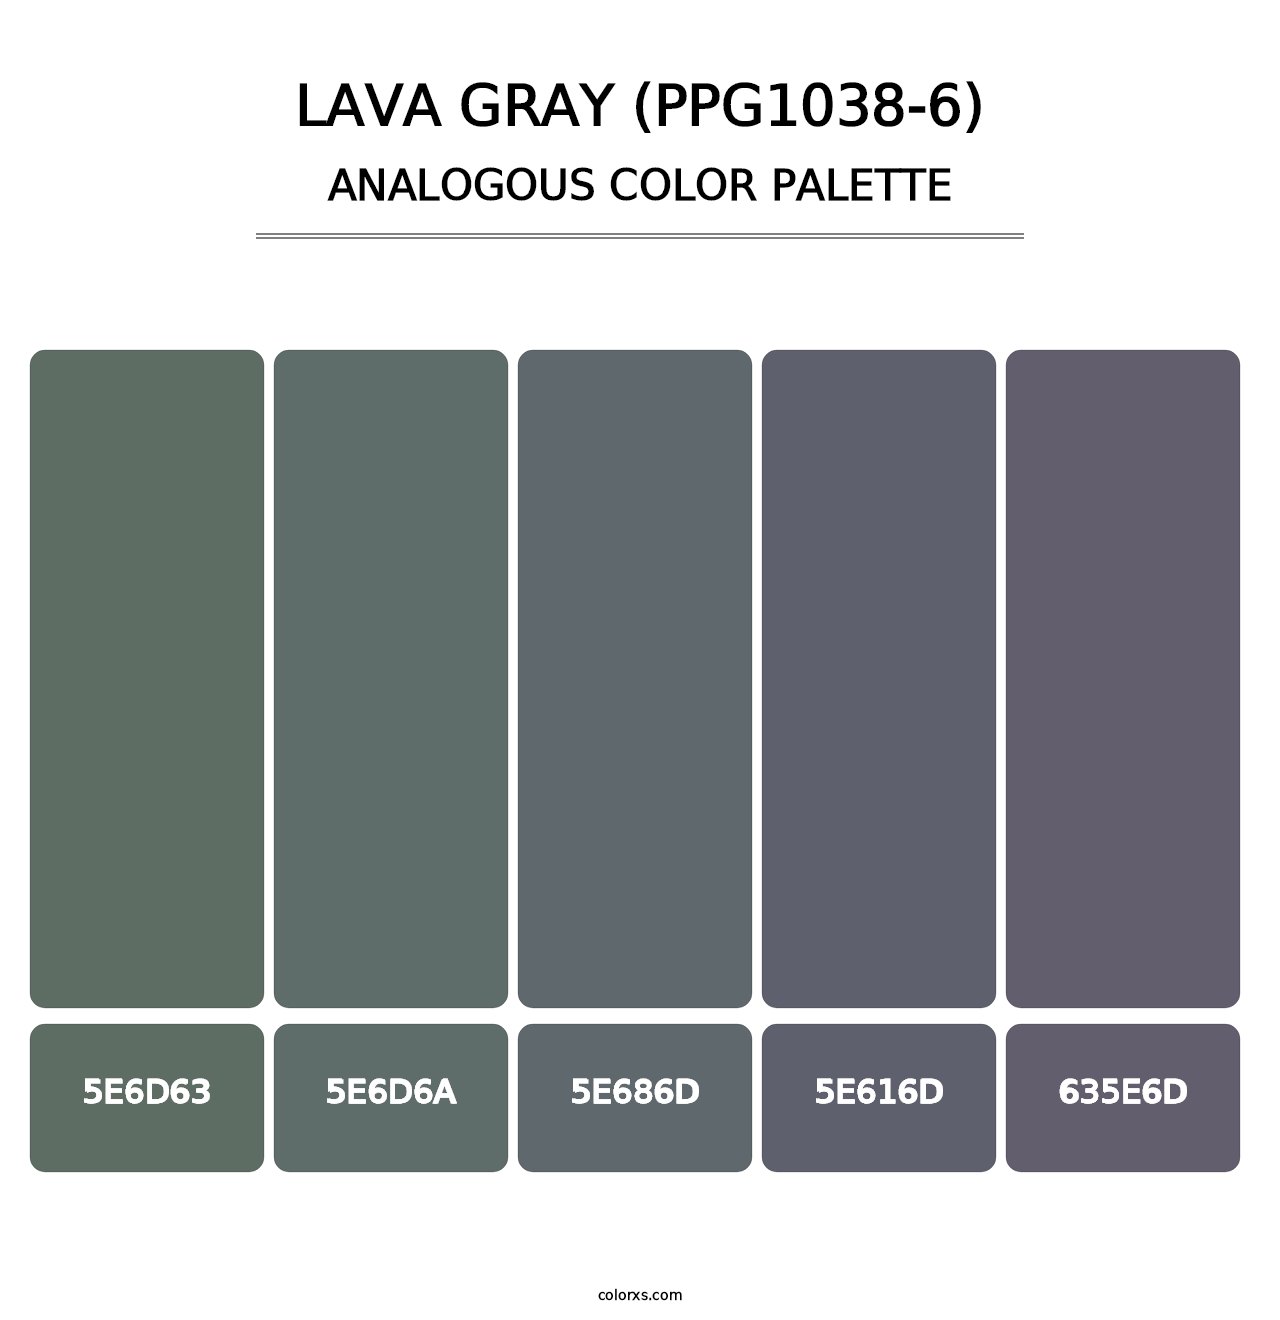 Lava Gray (PPG1038-6) - Analogous Color Palette